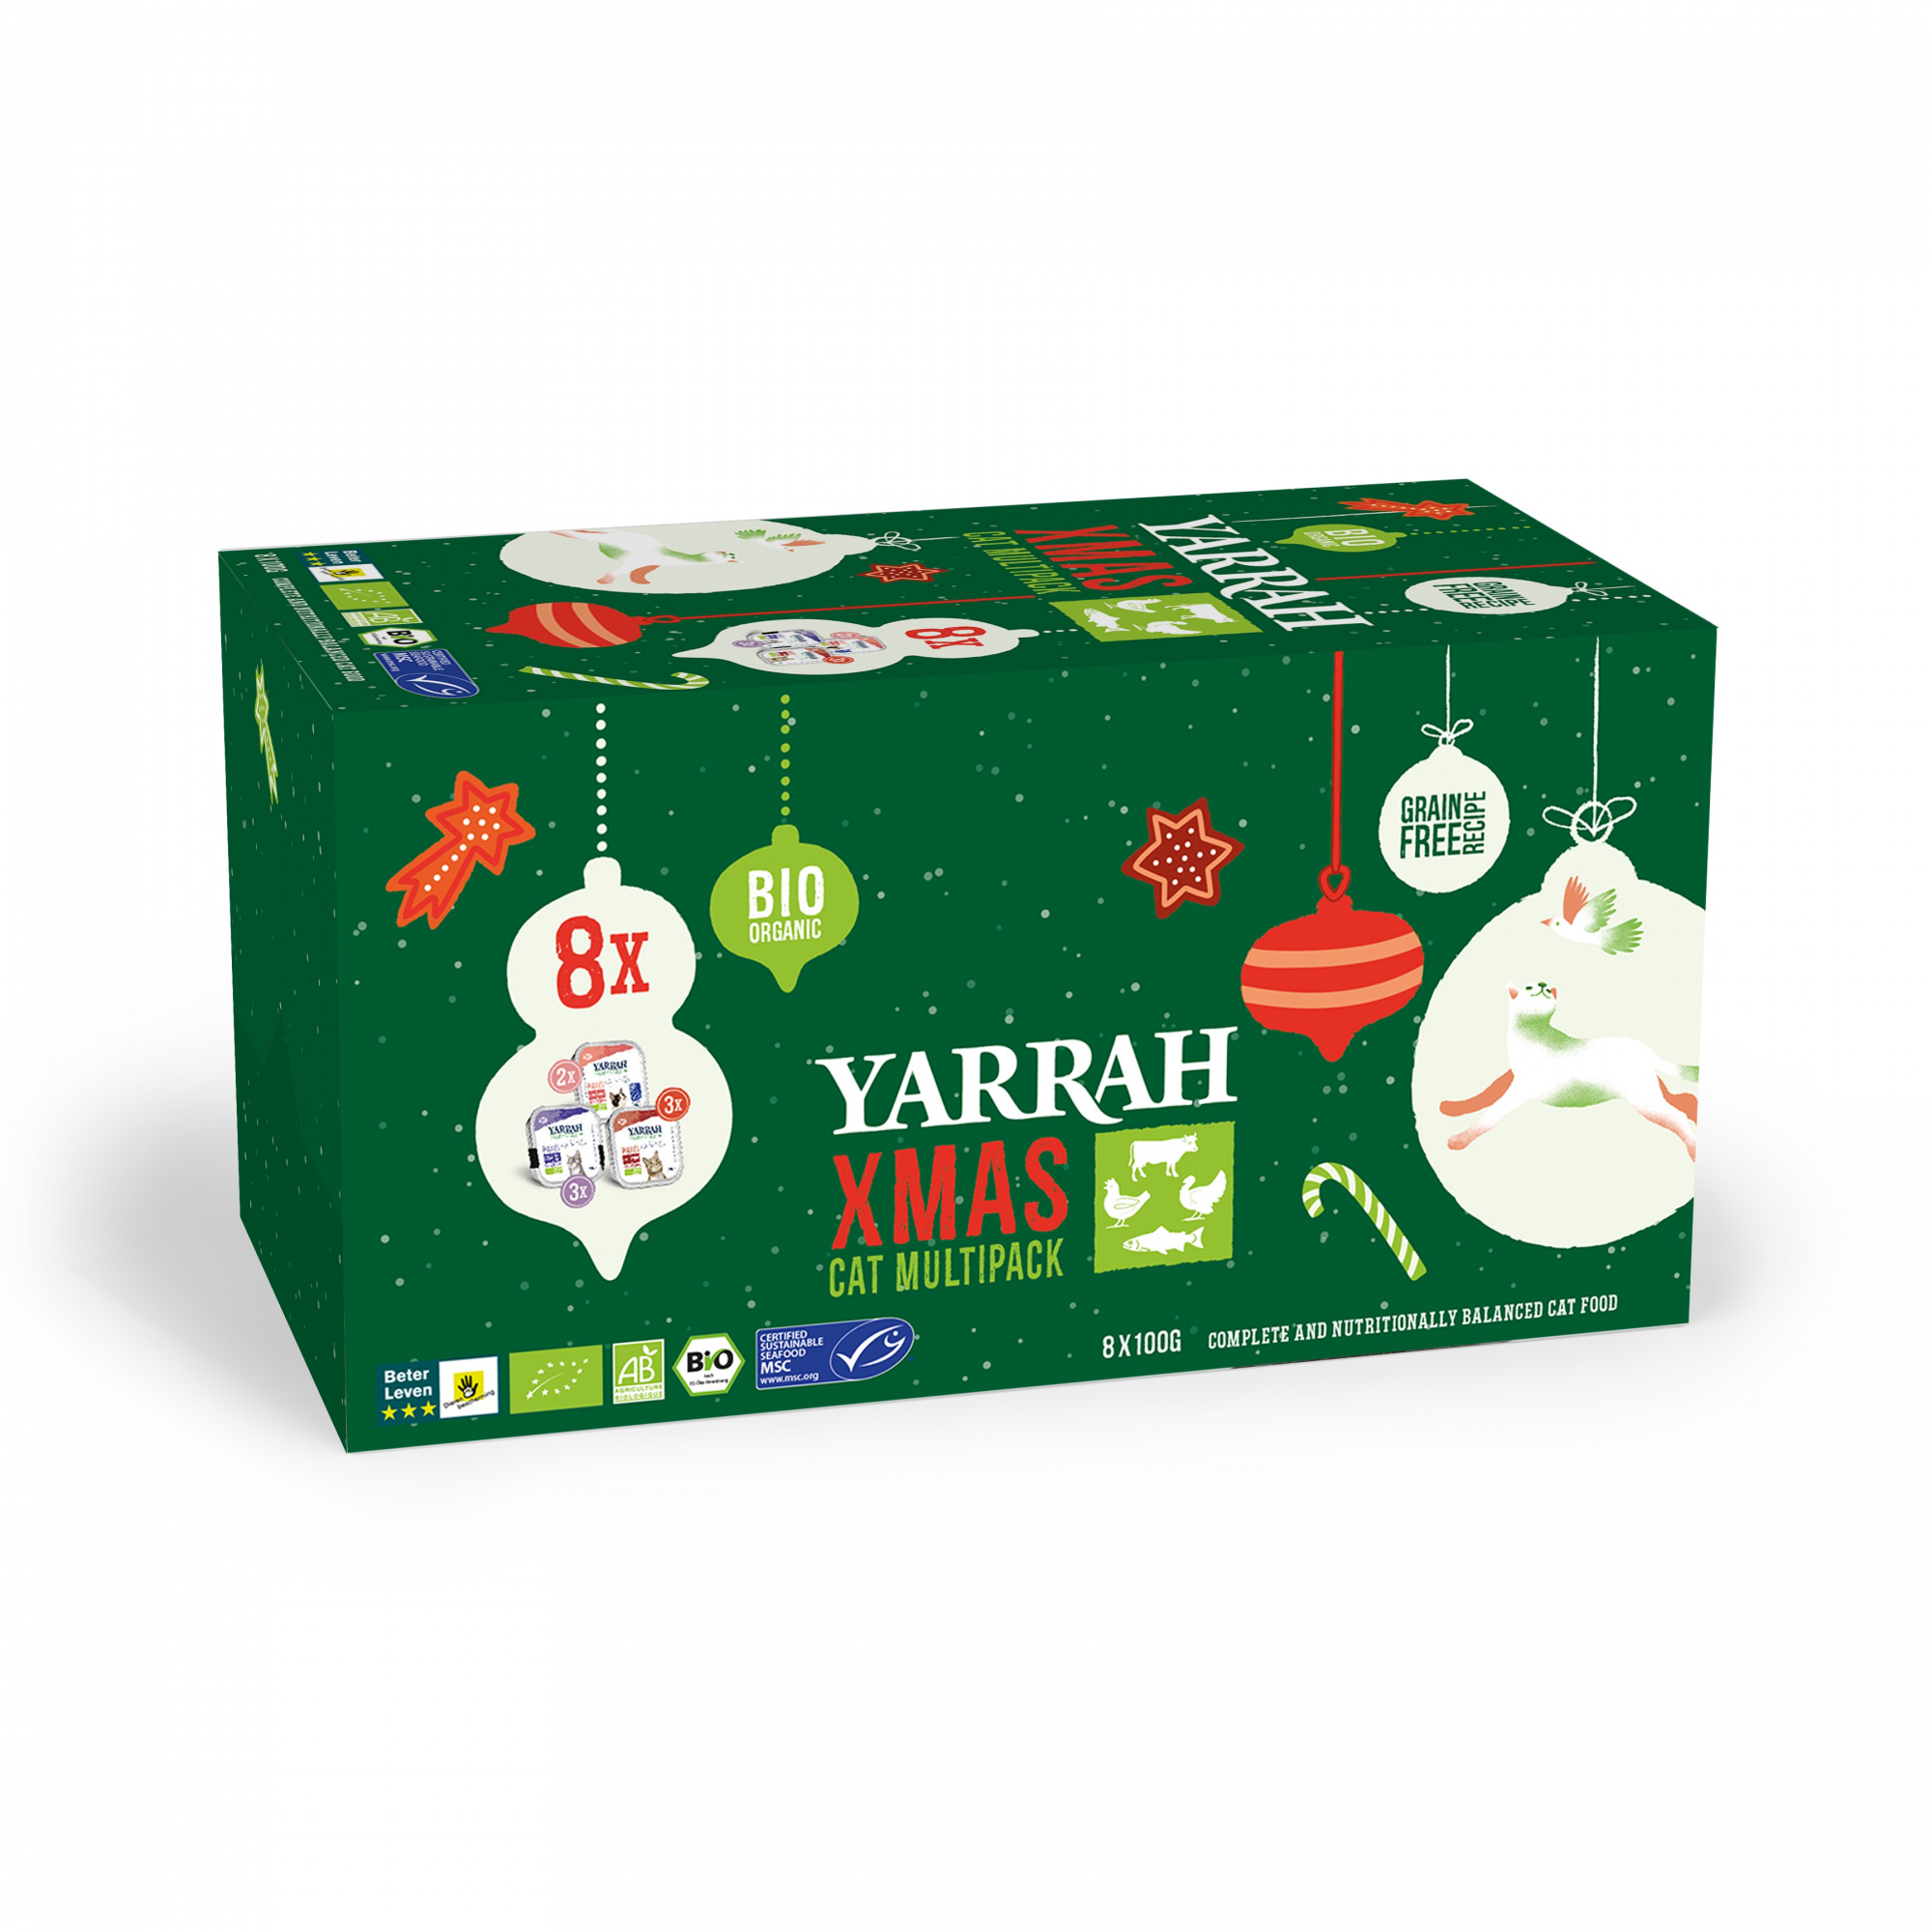 YARRAH Comida húmeda BIO para gatos Pack de 3 recetas de Navidad - 8x100g